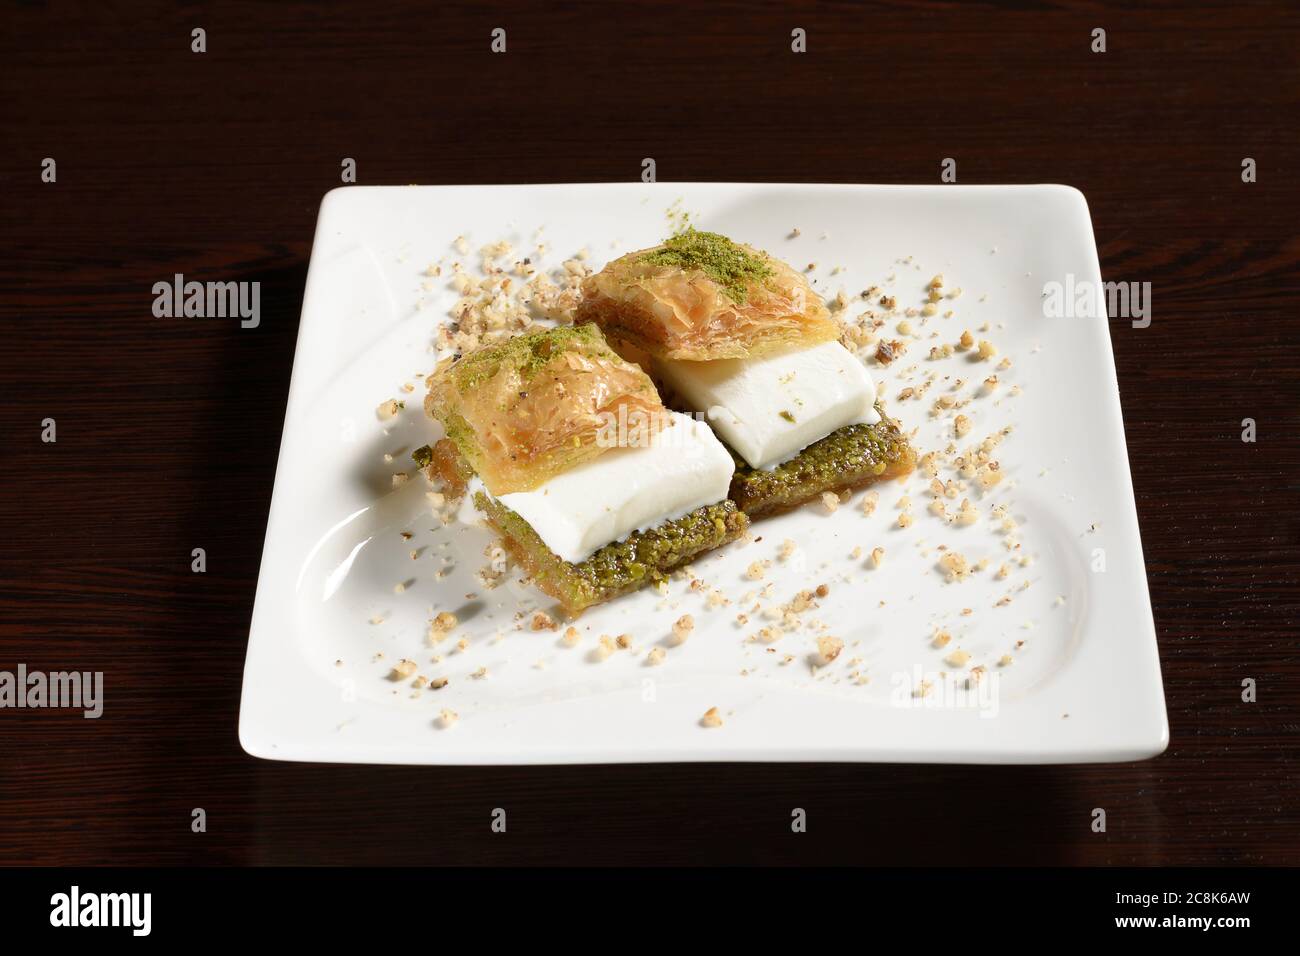 Türkische Süße Blätterteig mit Eis, zwei Baklava auf einem Teller. Fotos für Restaurant- und Cafe-Menüs Stockfoto